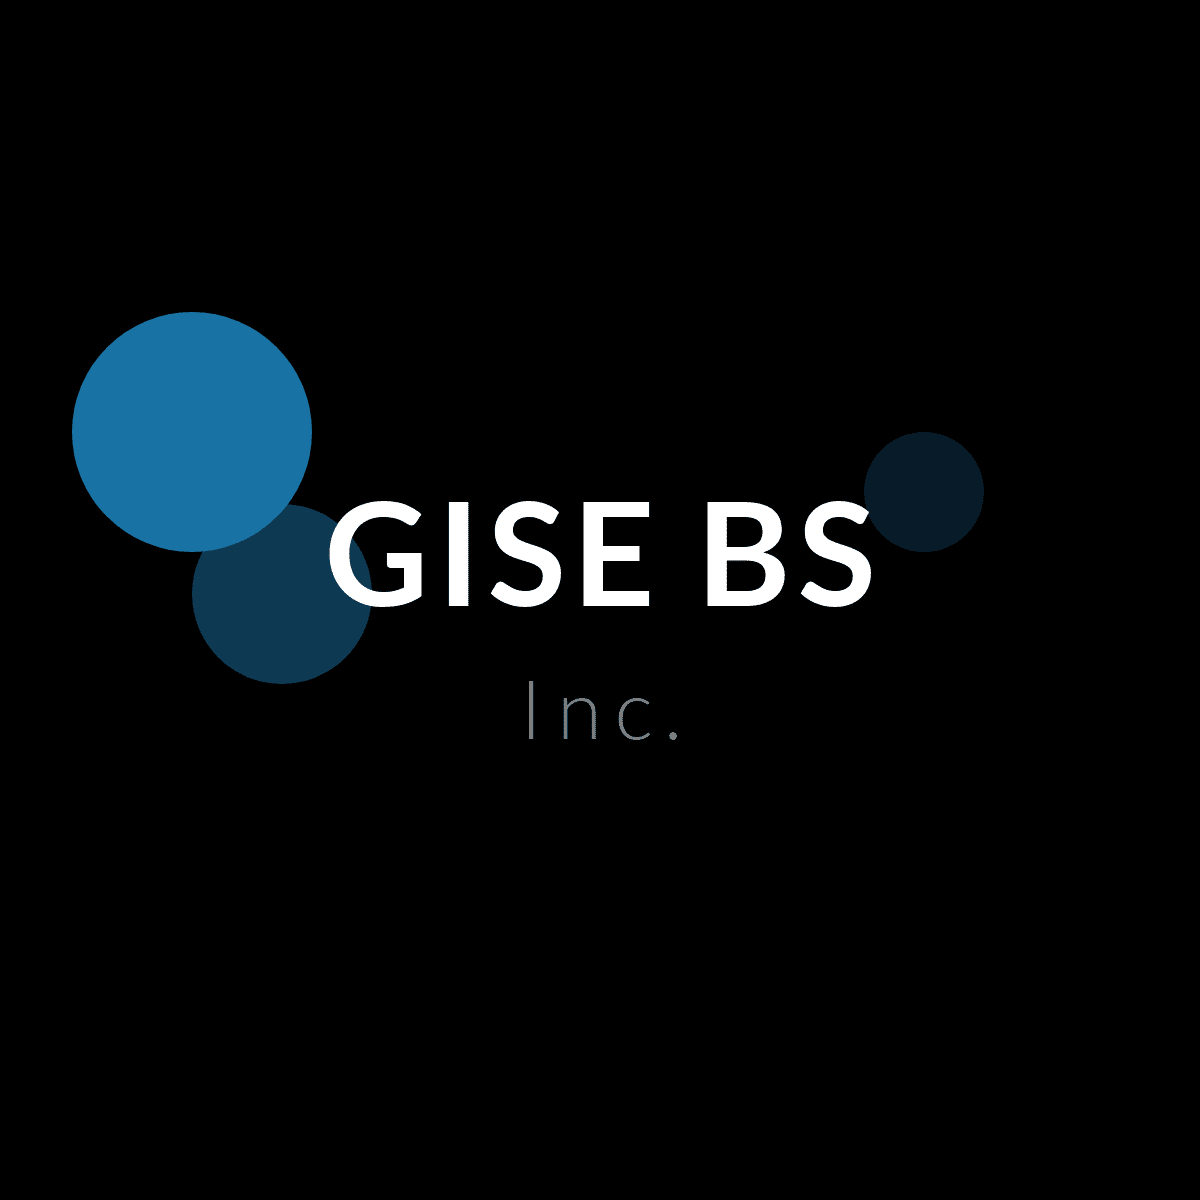 Groupe GISEBS Inc à Québec offre des produits et service dans la région de Capitale-Nationale tels que : Développement logiciel, Design web, Service conseil et notre répertoire des entreprises québécoises est fier de présenter Groupe GISEBS Inc à Québec en Capitale-Nationale.